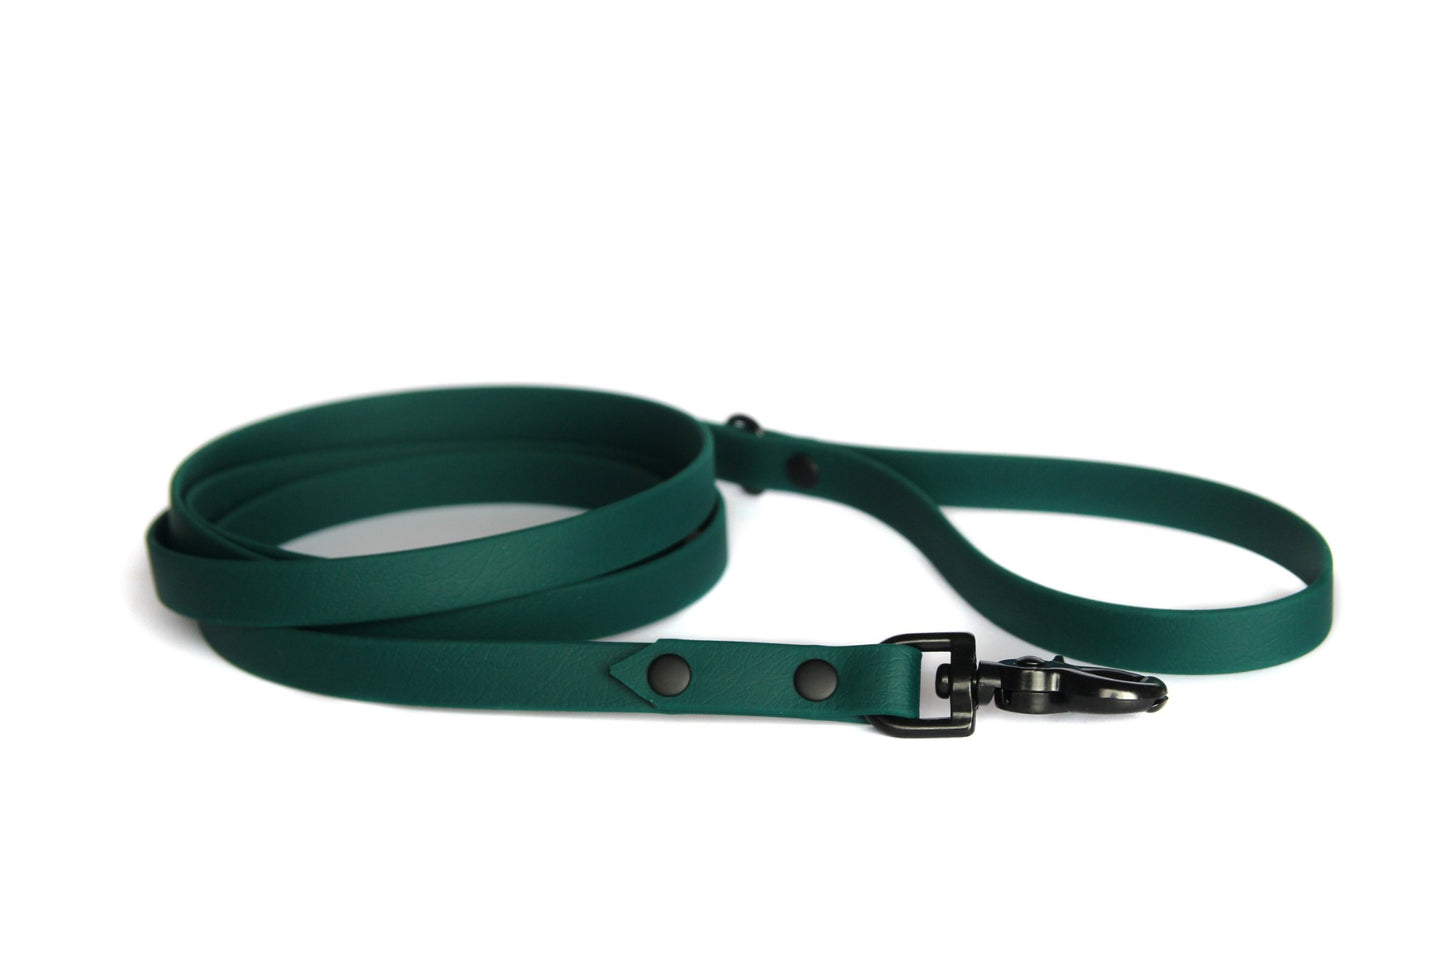 Waterproof everyday leash 120-180cm